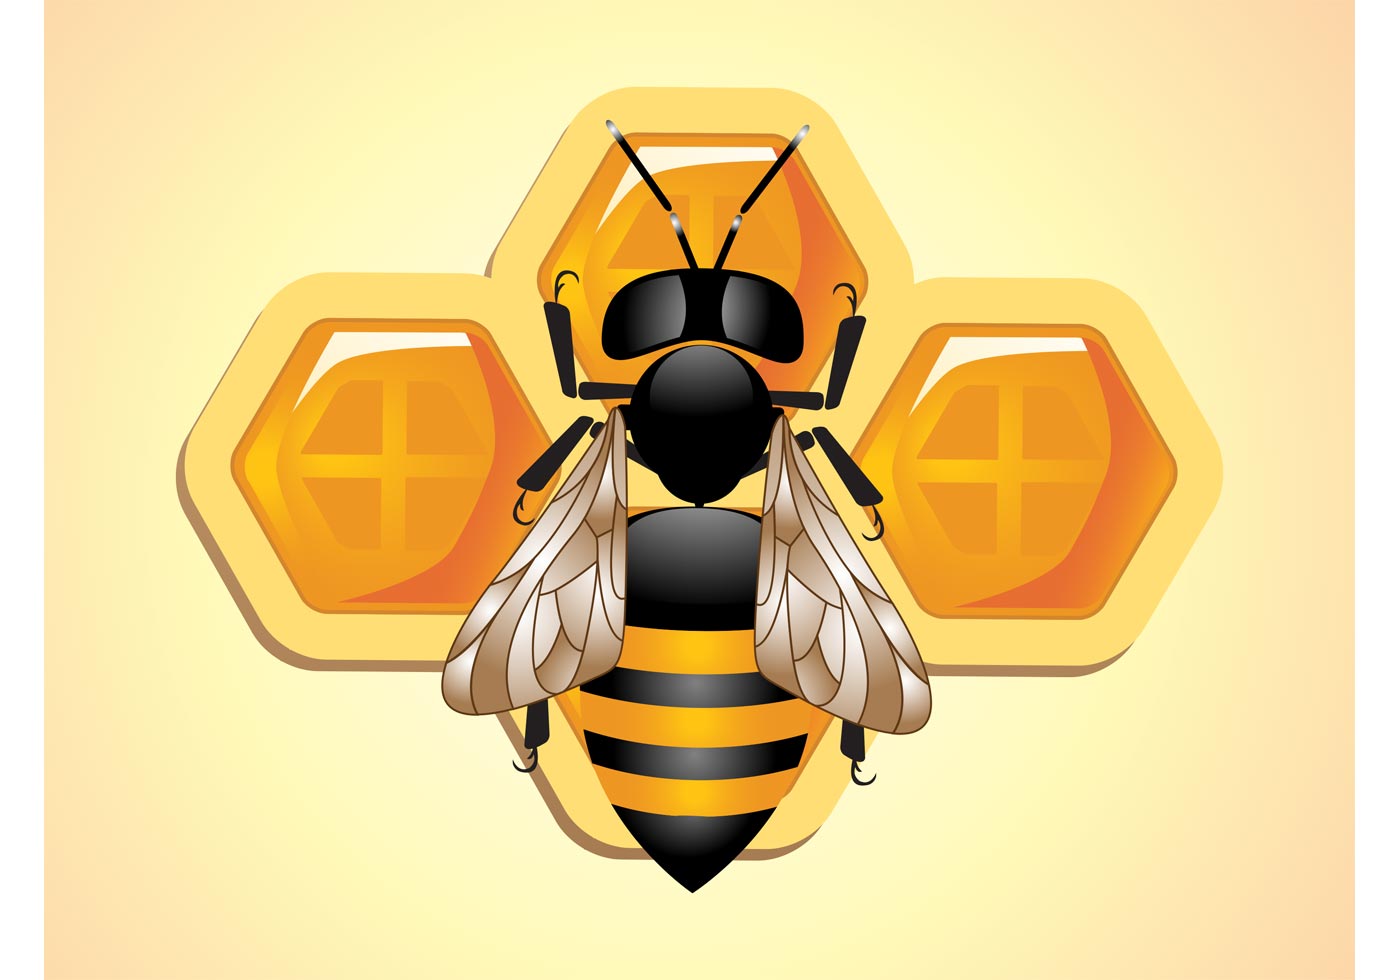 Download Bee Vector - Download Free Vector Art, Stock Graphics & Images